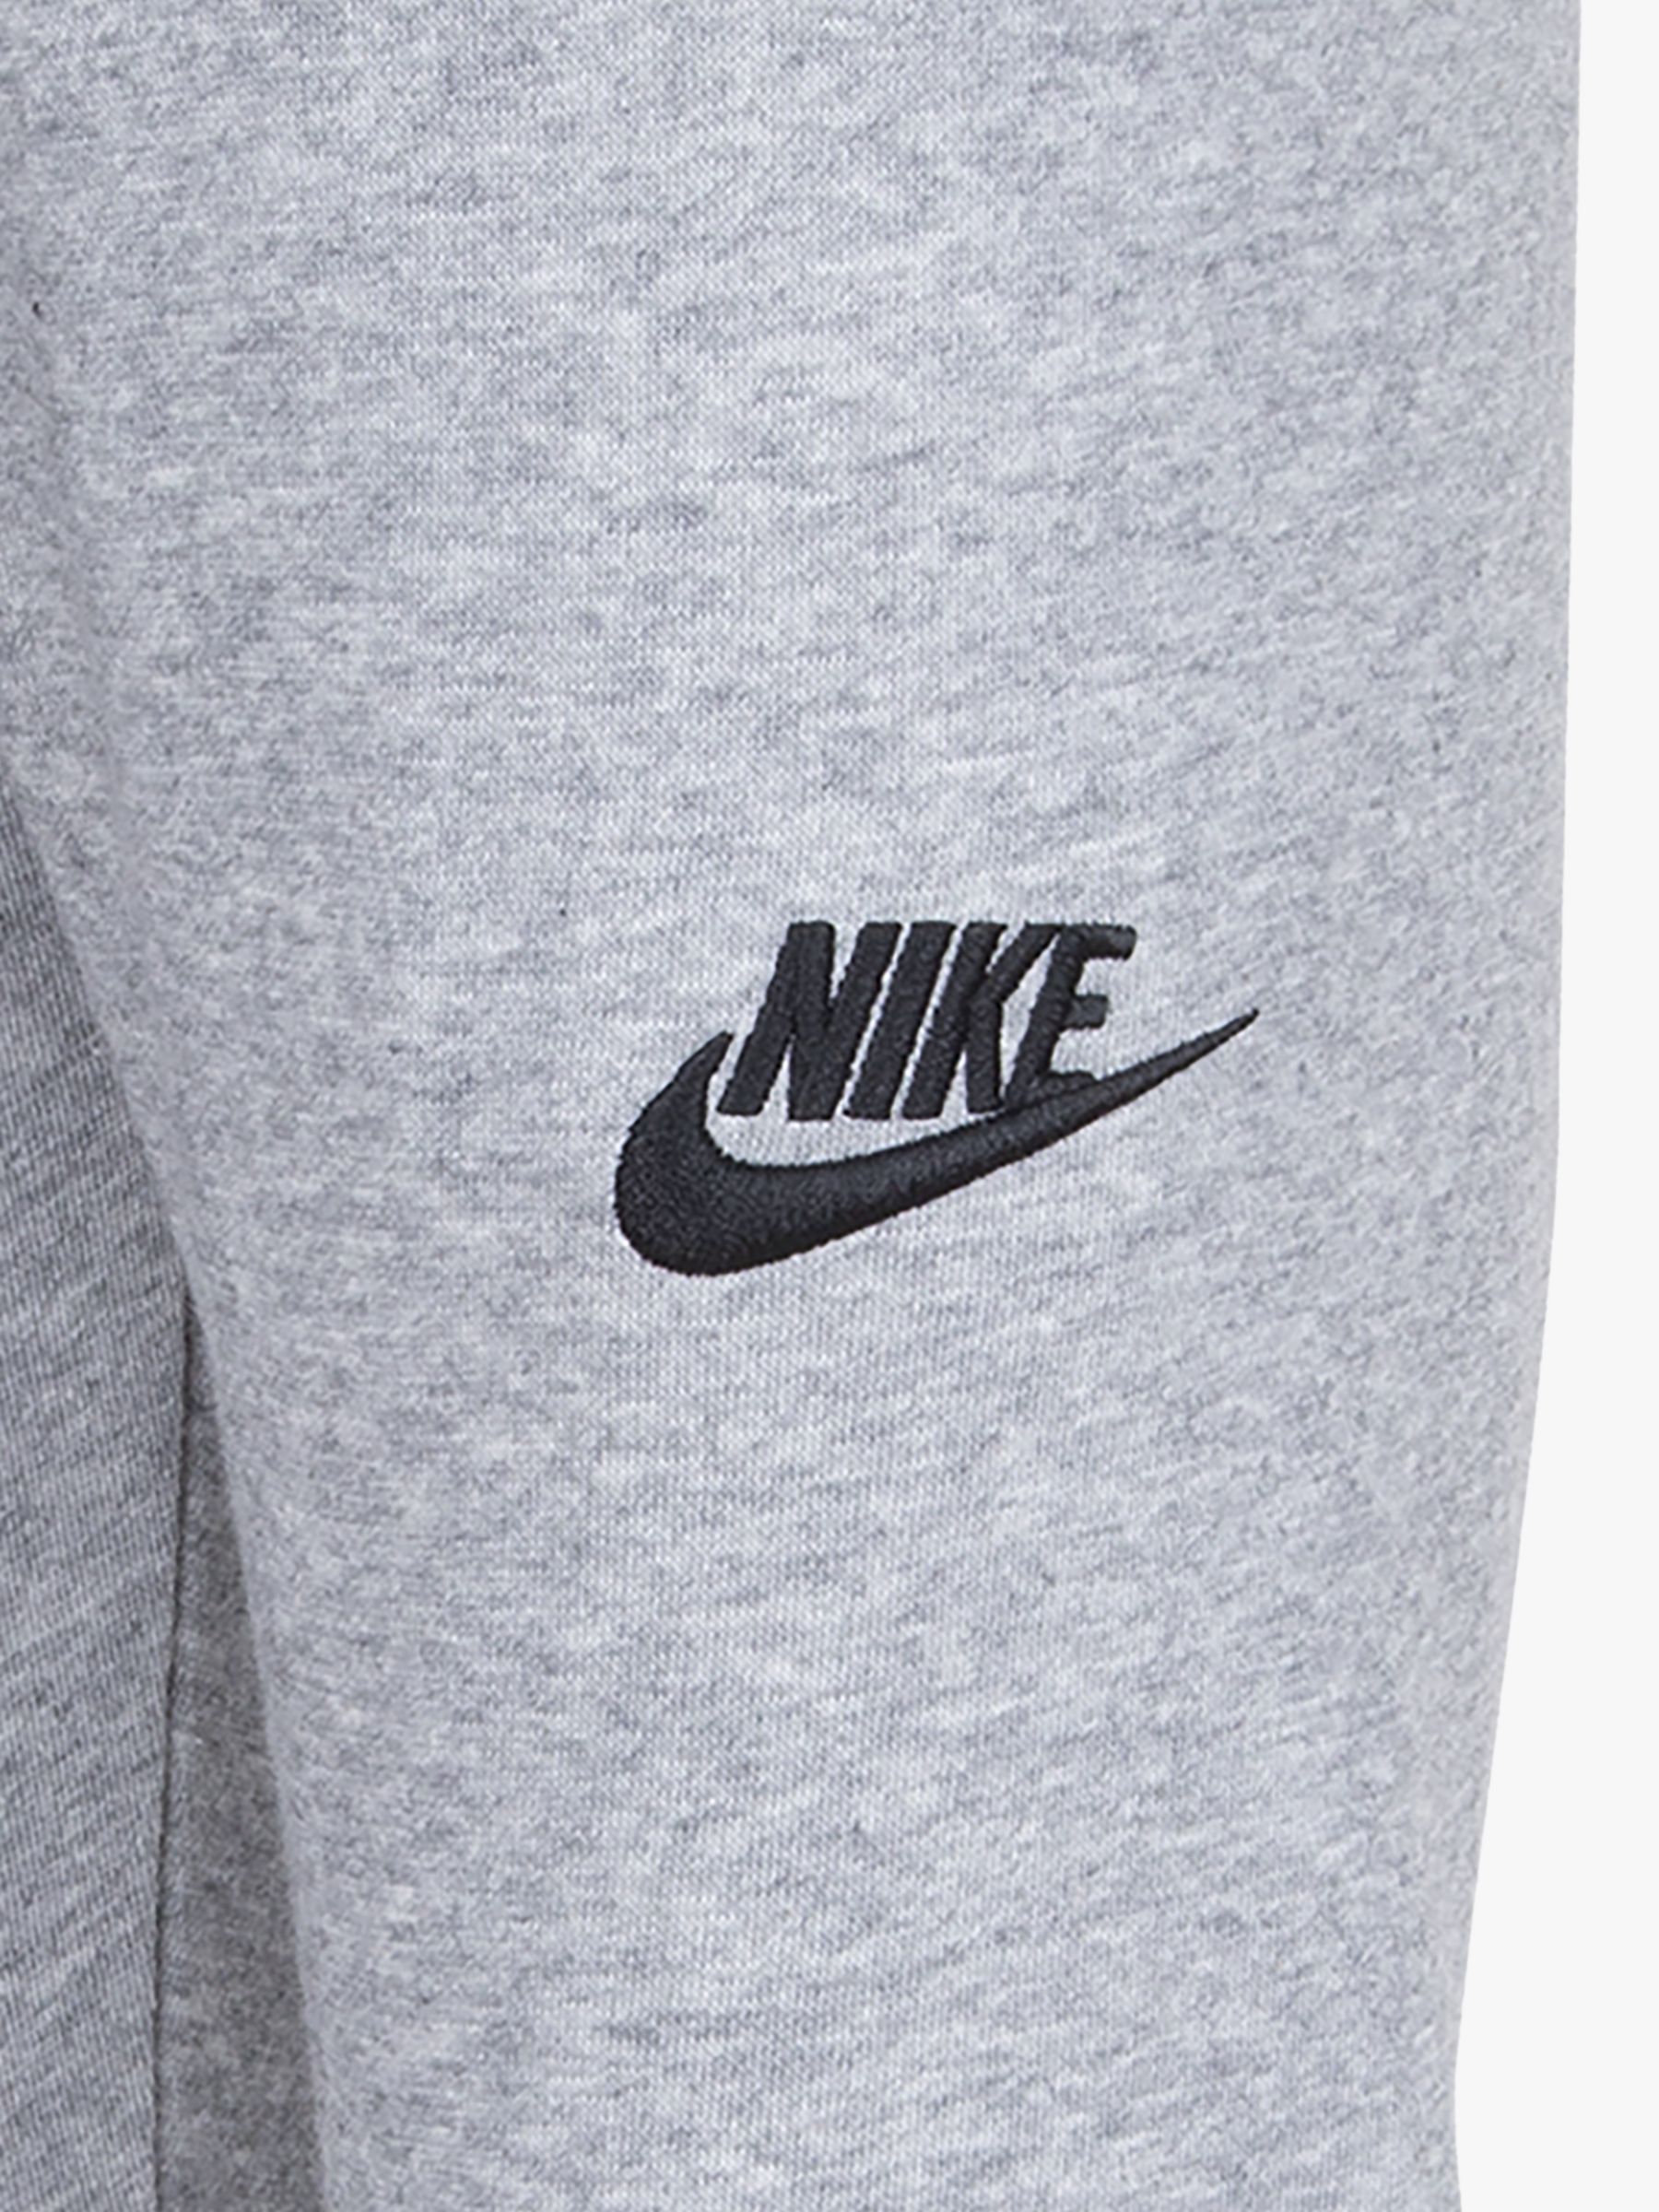 Nike Graphic Logo Hoodie & Logo Jogging Bottoms Tracksuit, Grey/Multi ...